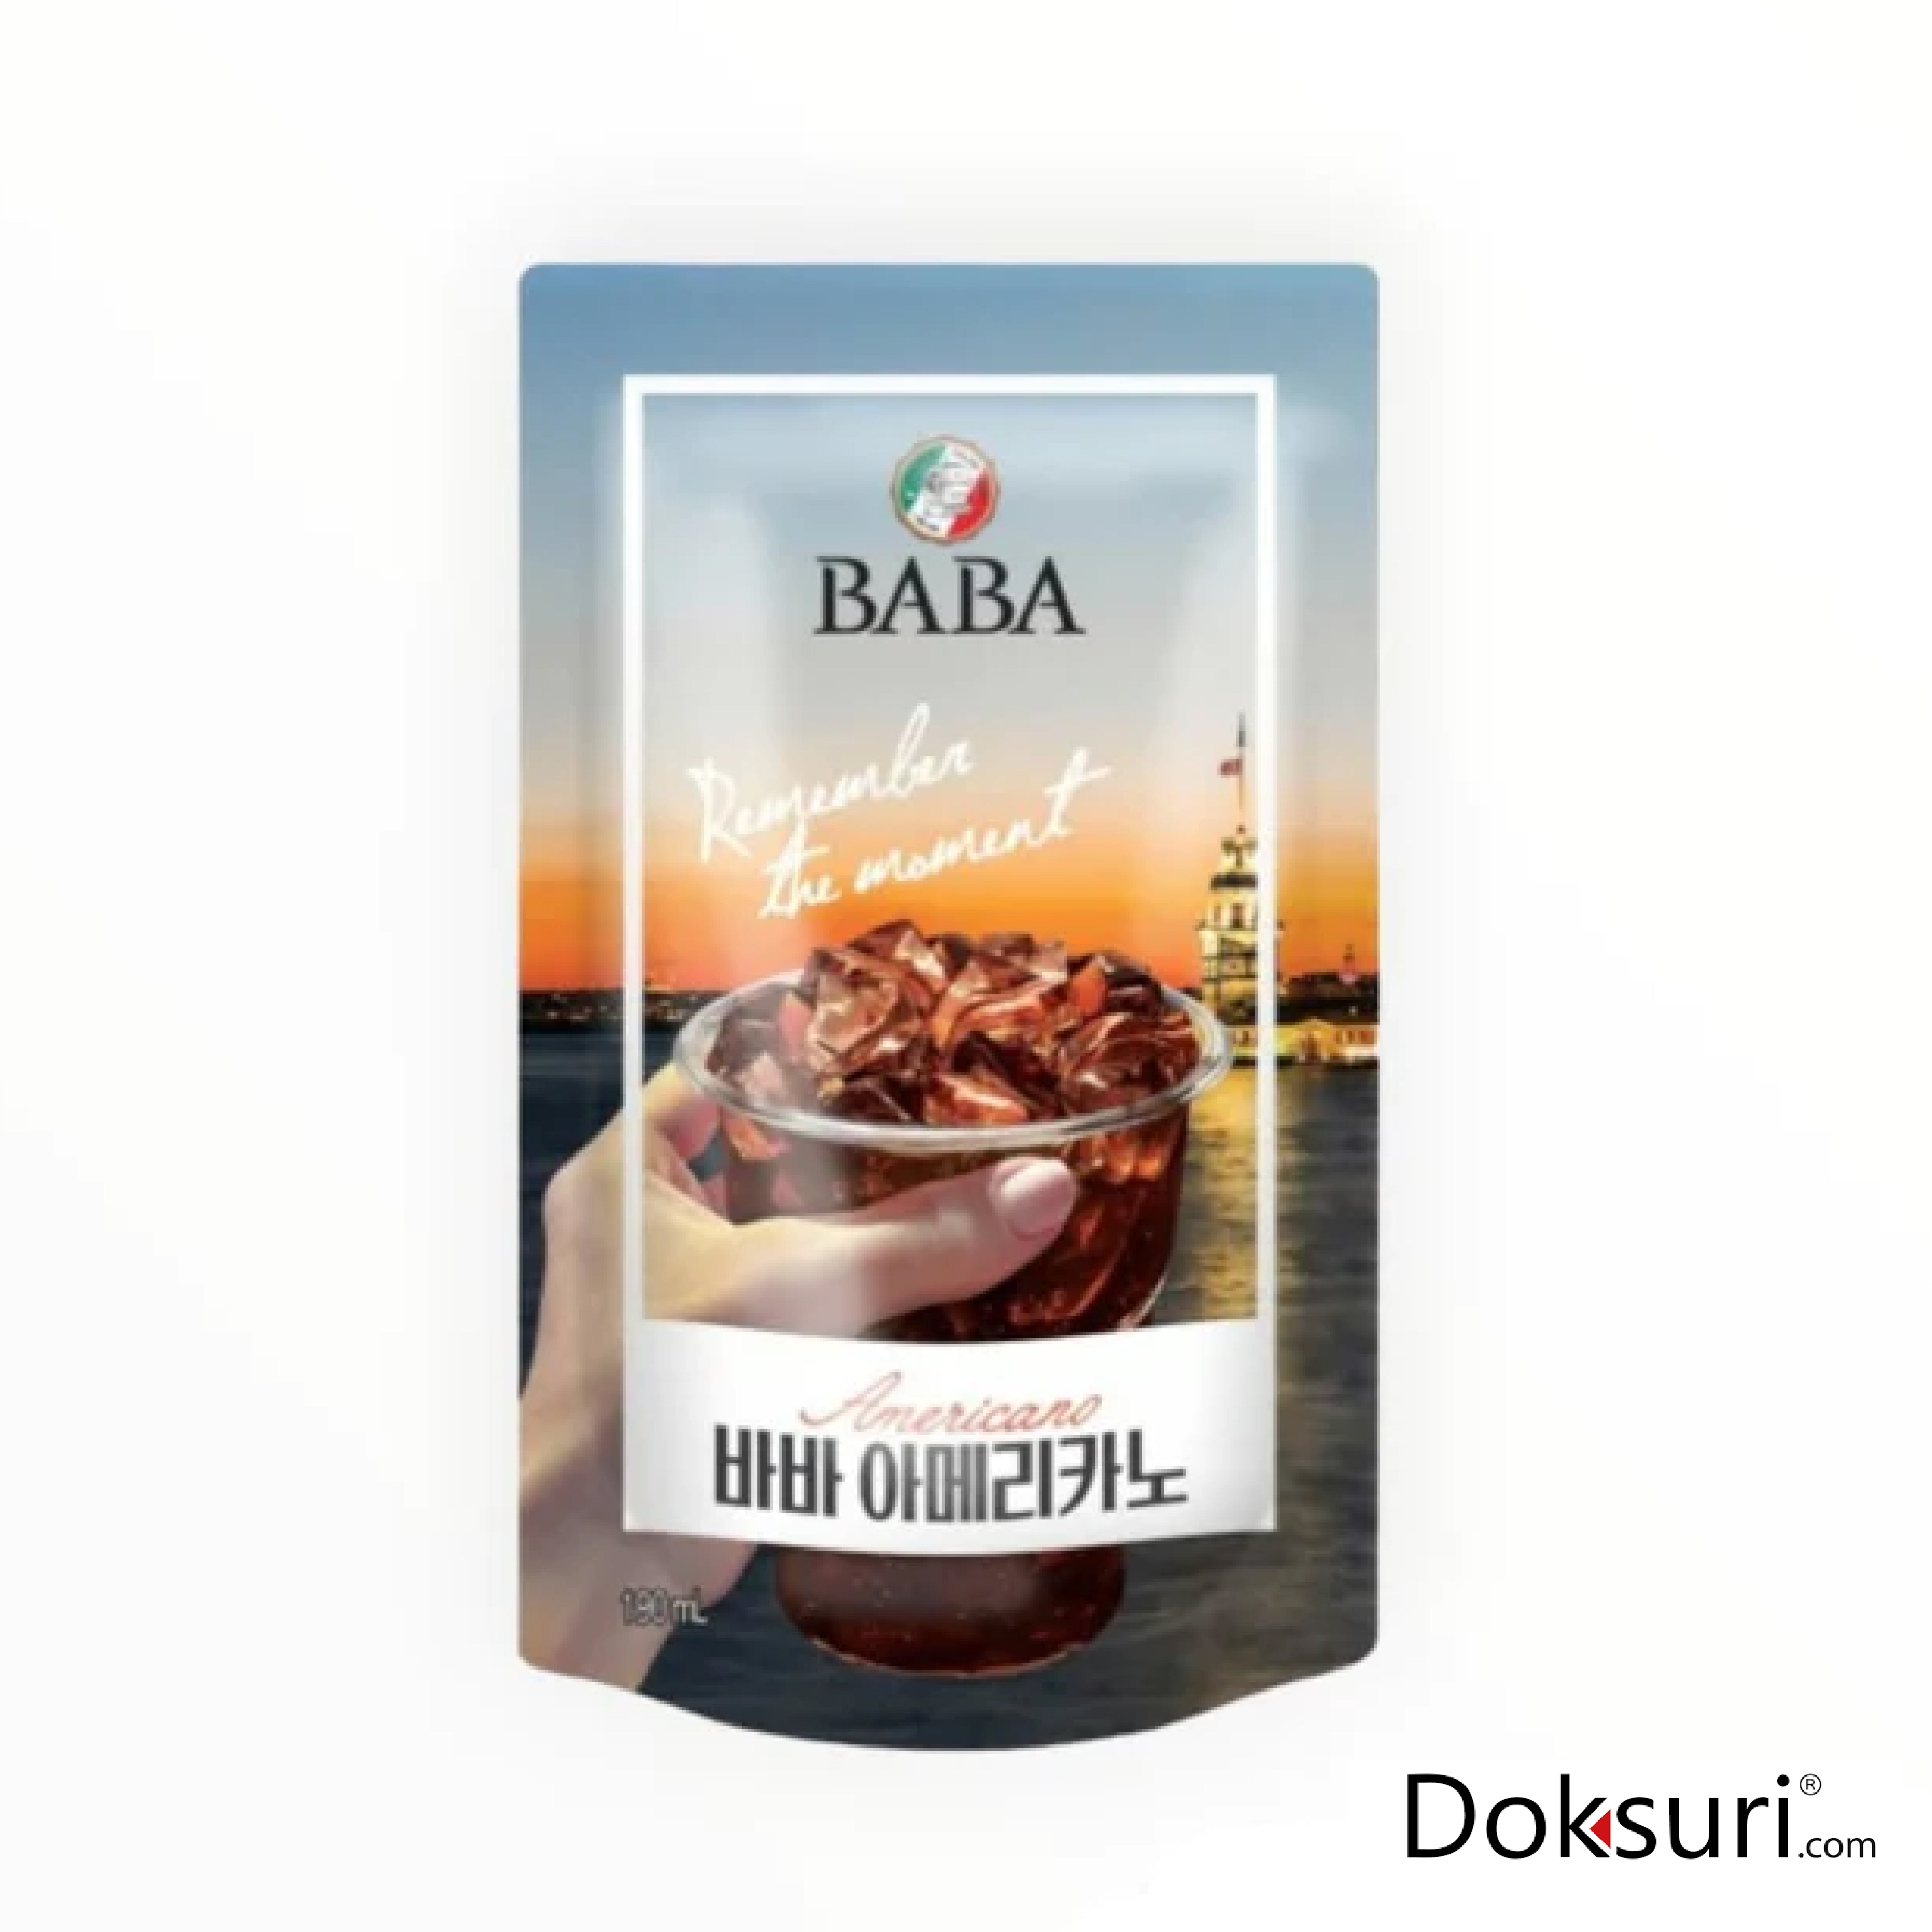 Baba Ice Americano Coffee 190ml